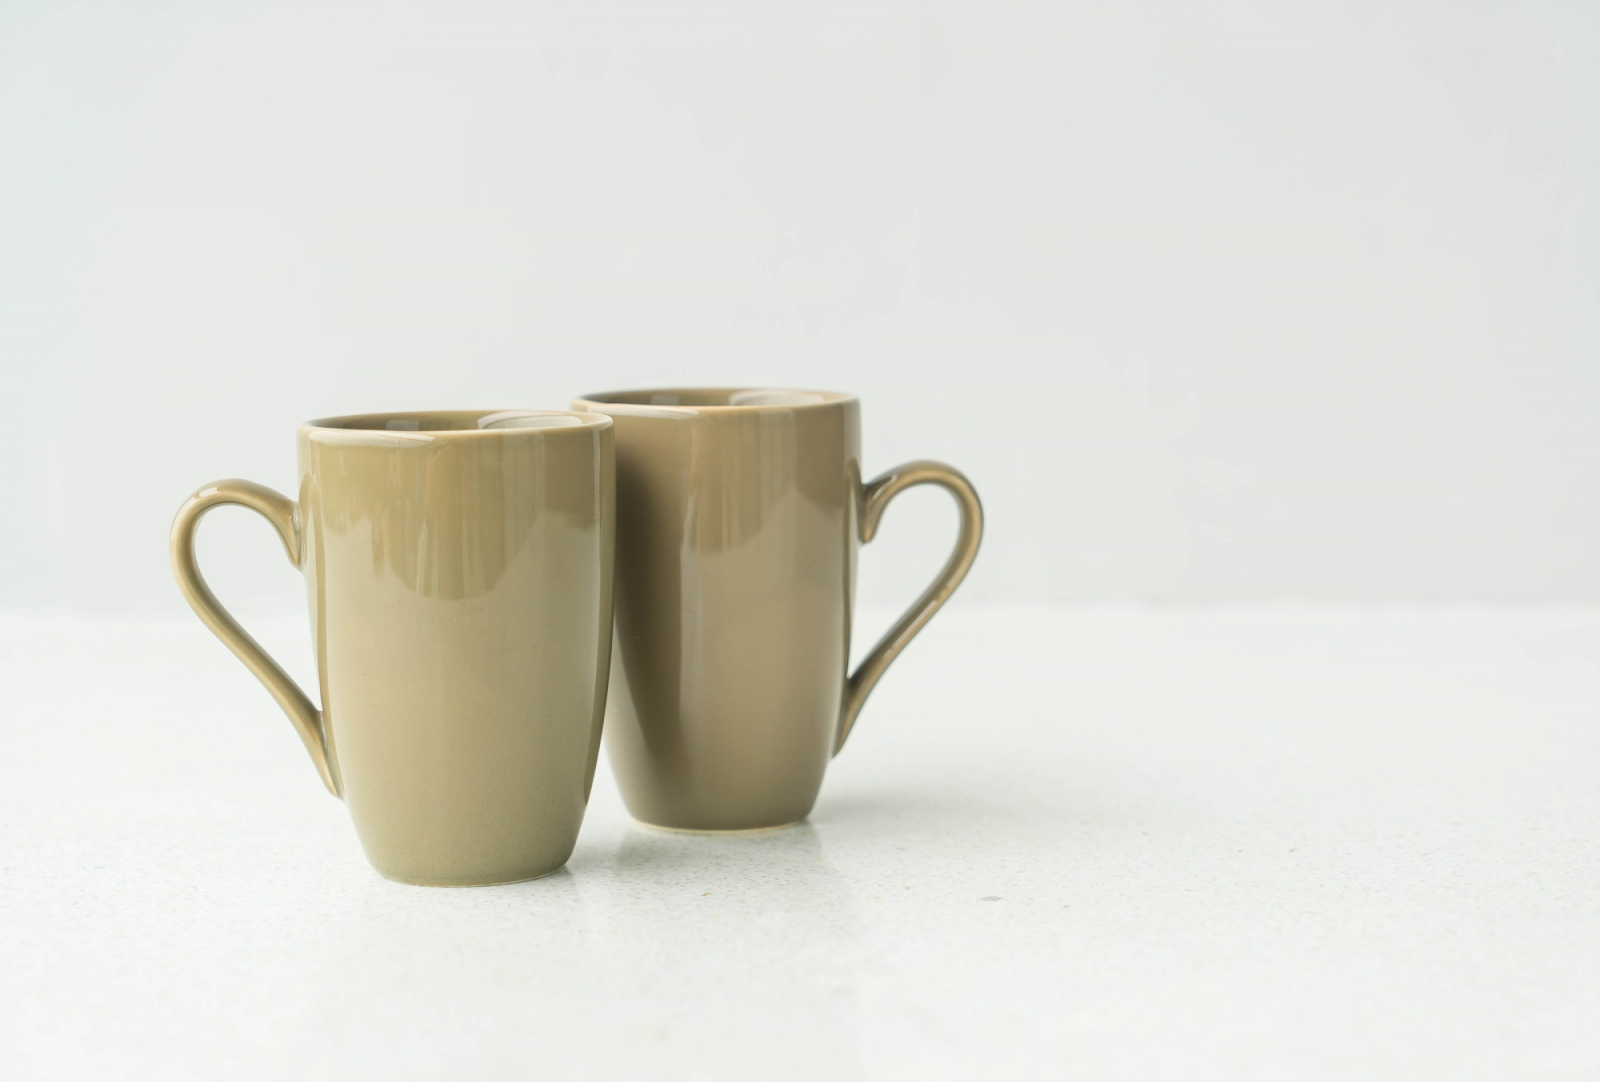 Mempunyai bentuk yang indah, kamu dapat menggunakan gelas mug keramik sebagai ide untuk parcel lebaran bagi karyawan